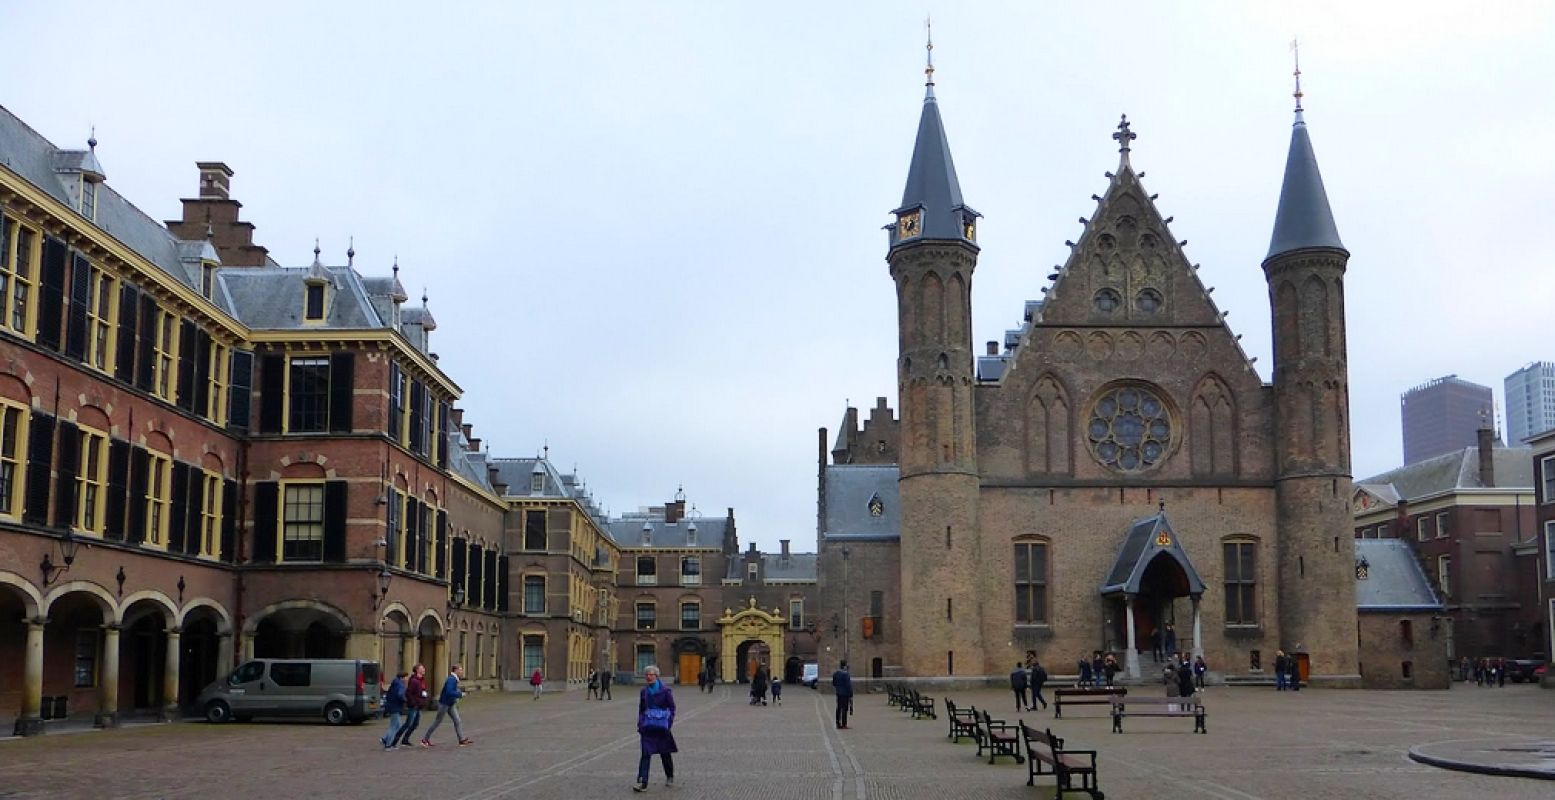 Het Binnenhof: hart van onze democratie en een van de mooiste bezienswaardigheden in Den Haag. Foto: DagjeWeg.NL